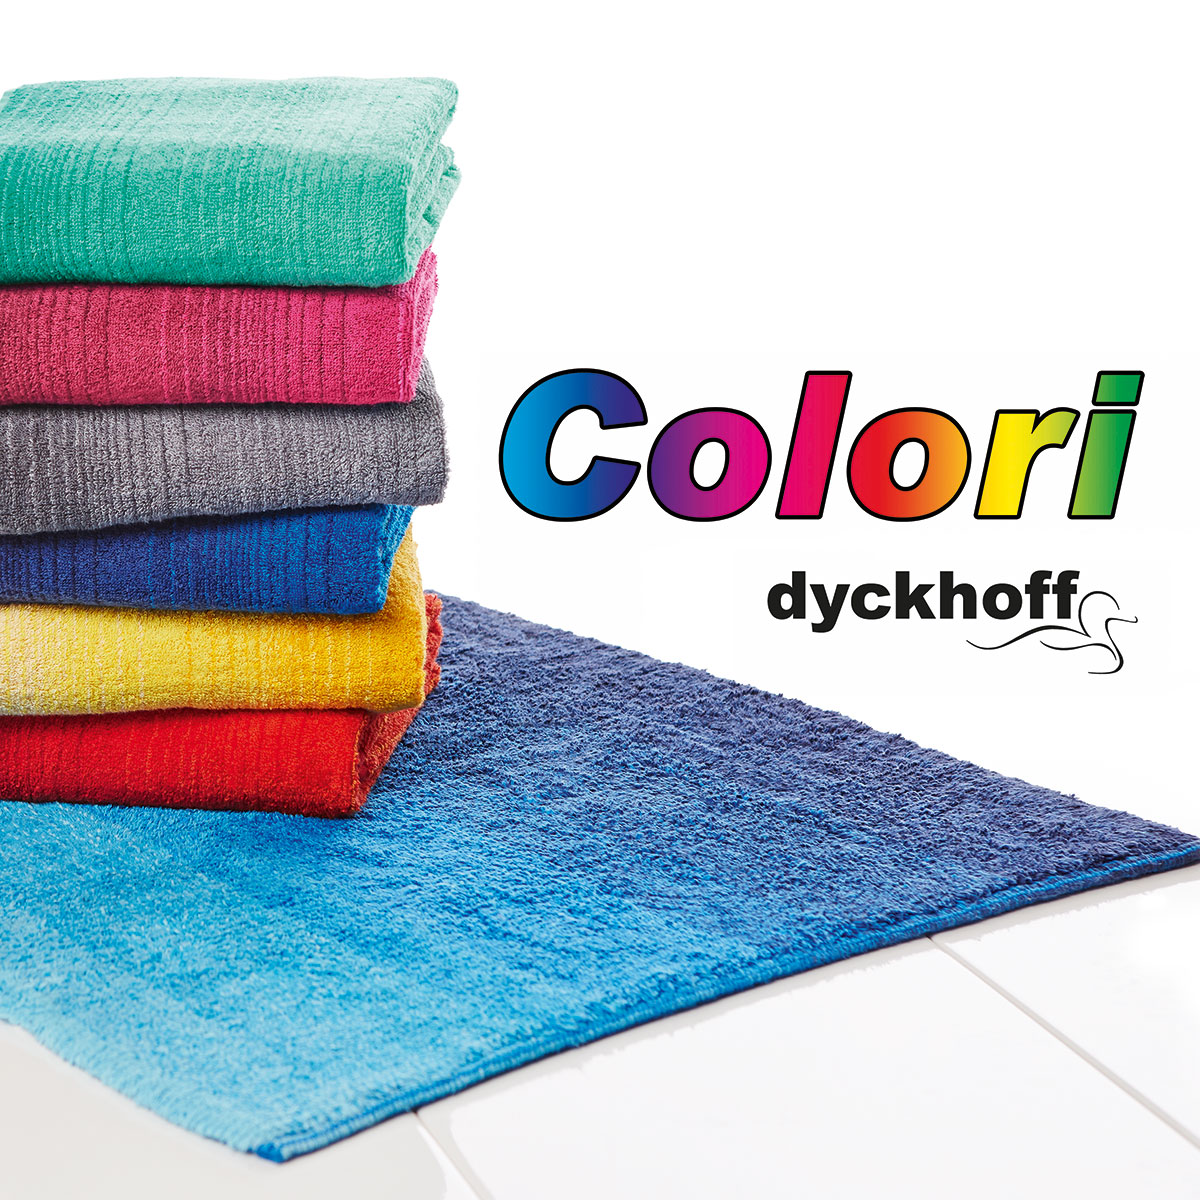 Colori, das Farbmelangeeffekten, Biobaumwolle-Handtuch Hause dem eleganten aus | Dyckhoff GmbH hochwertige mit Dyckhoff